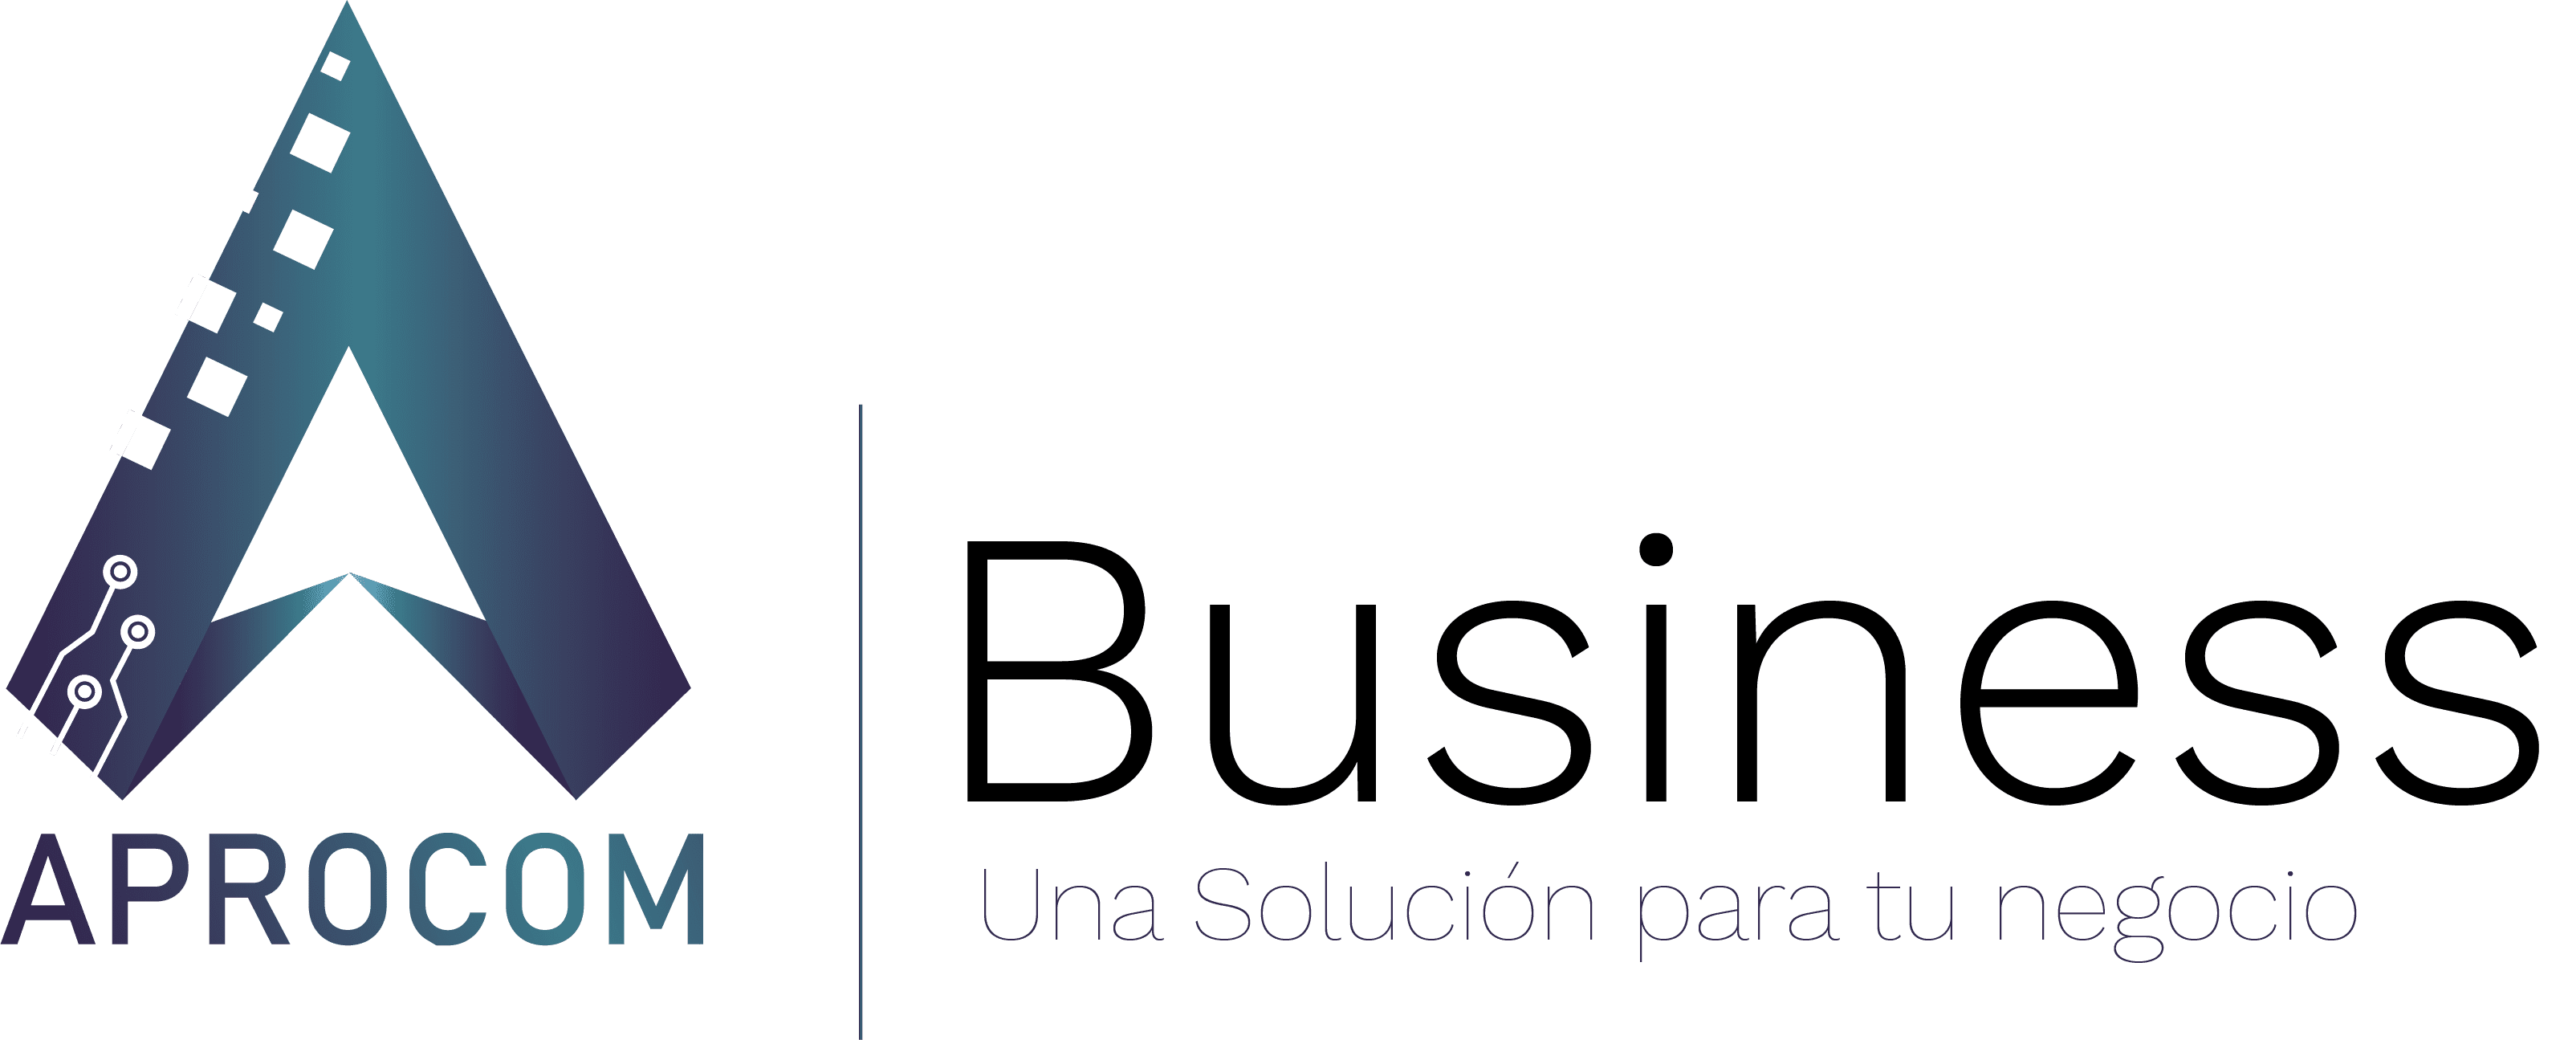 aprocom-business-logo